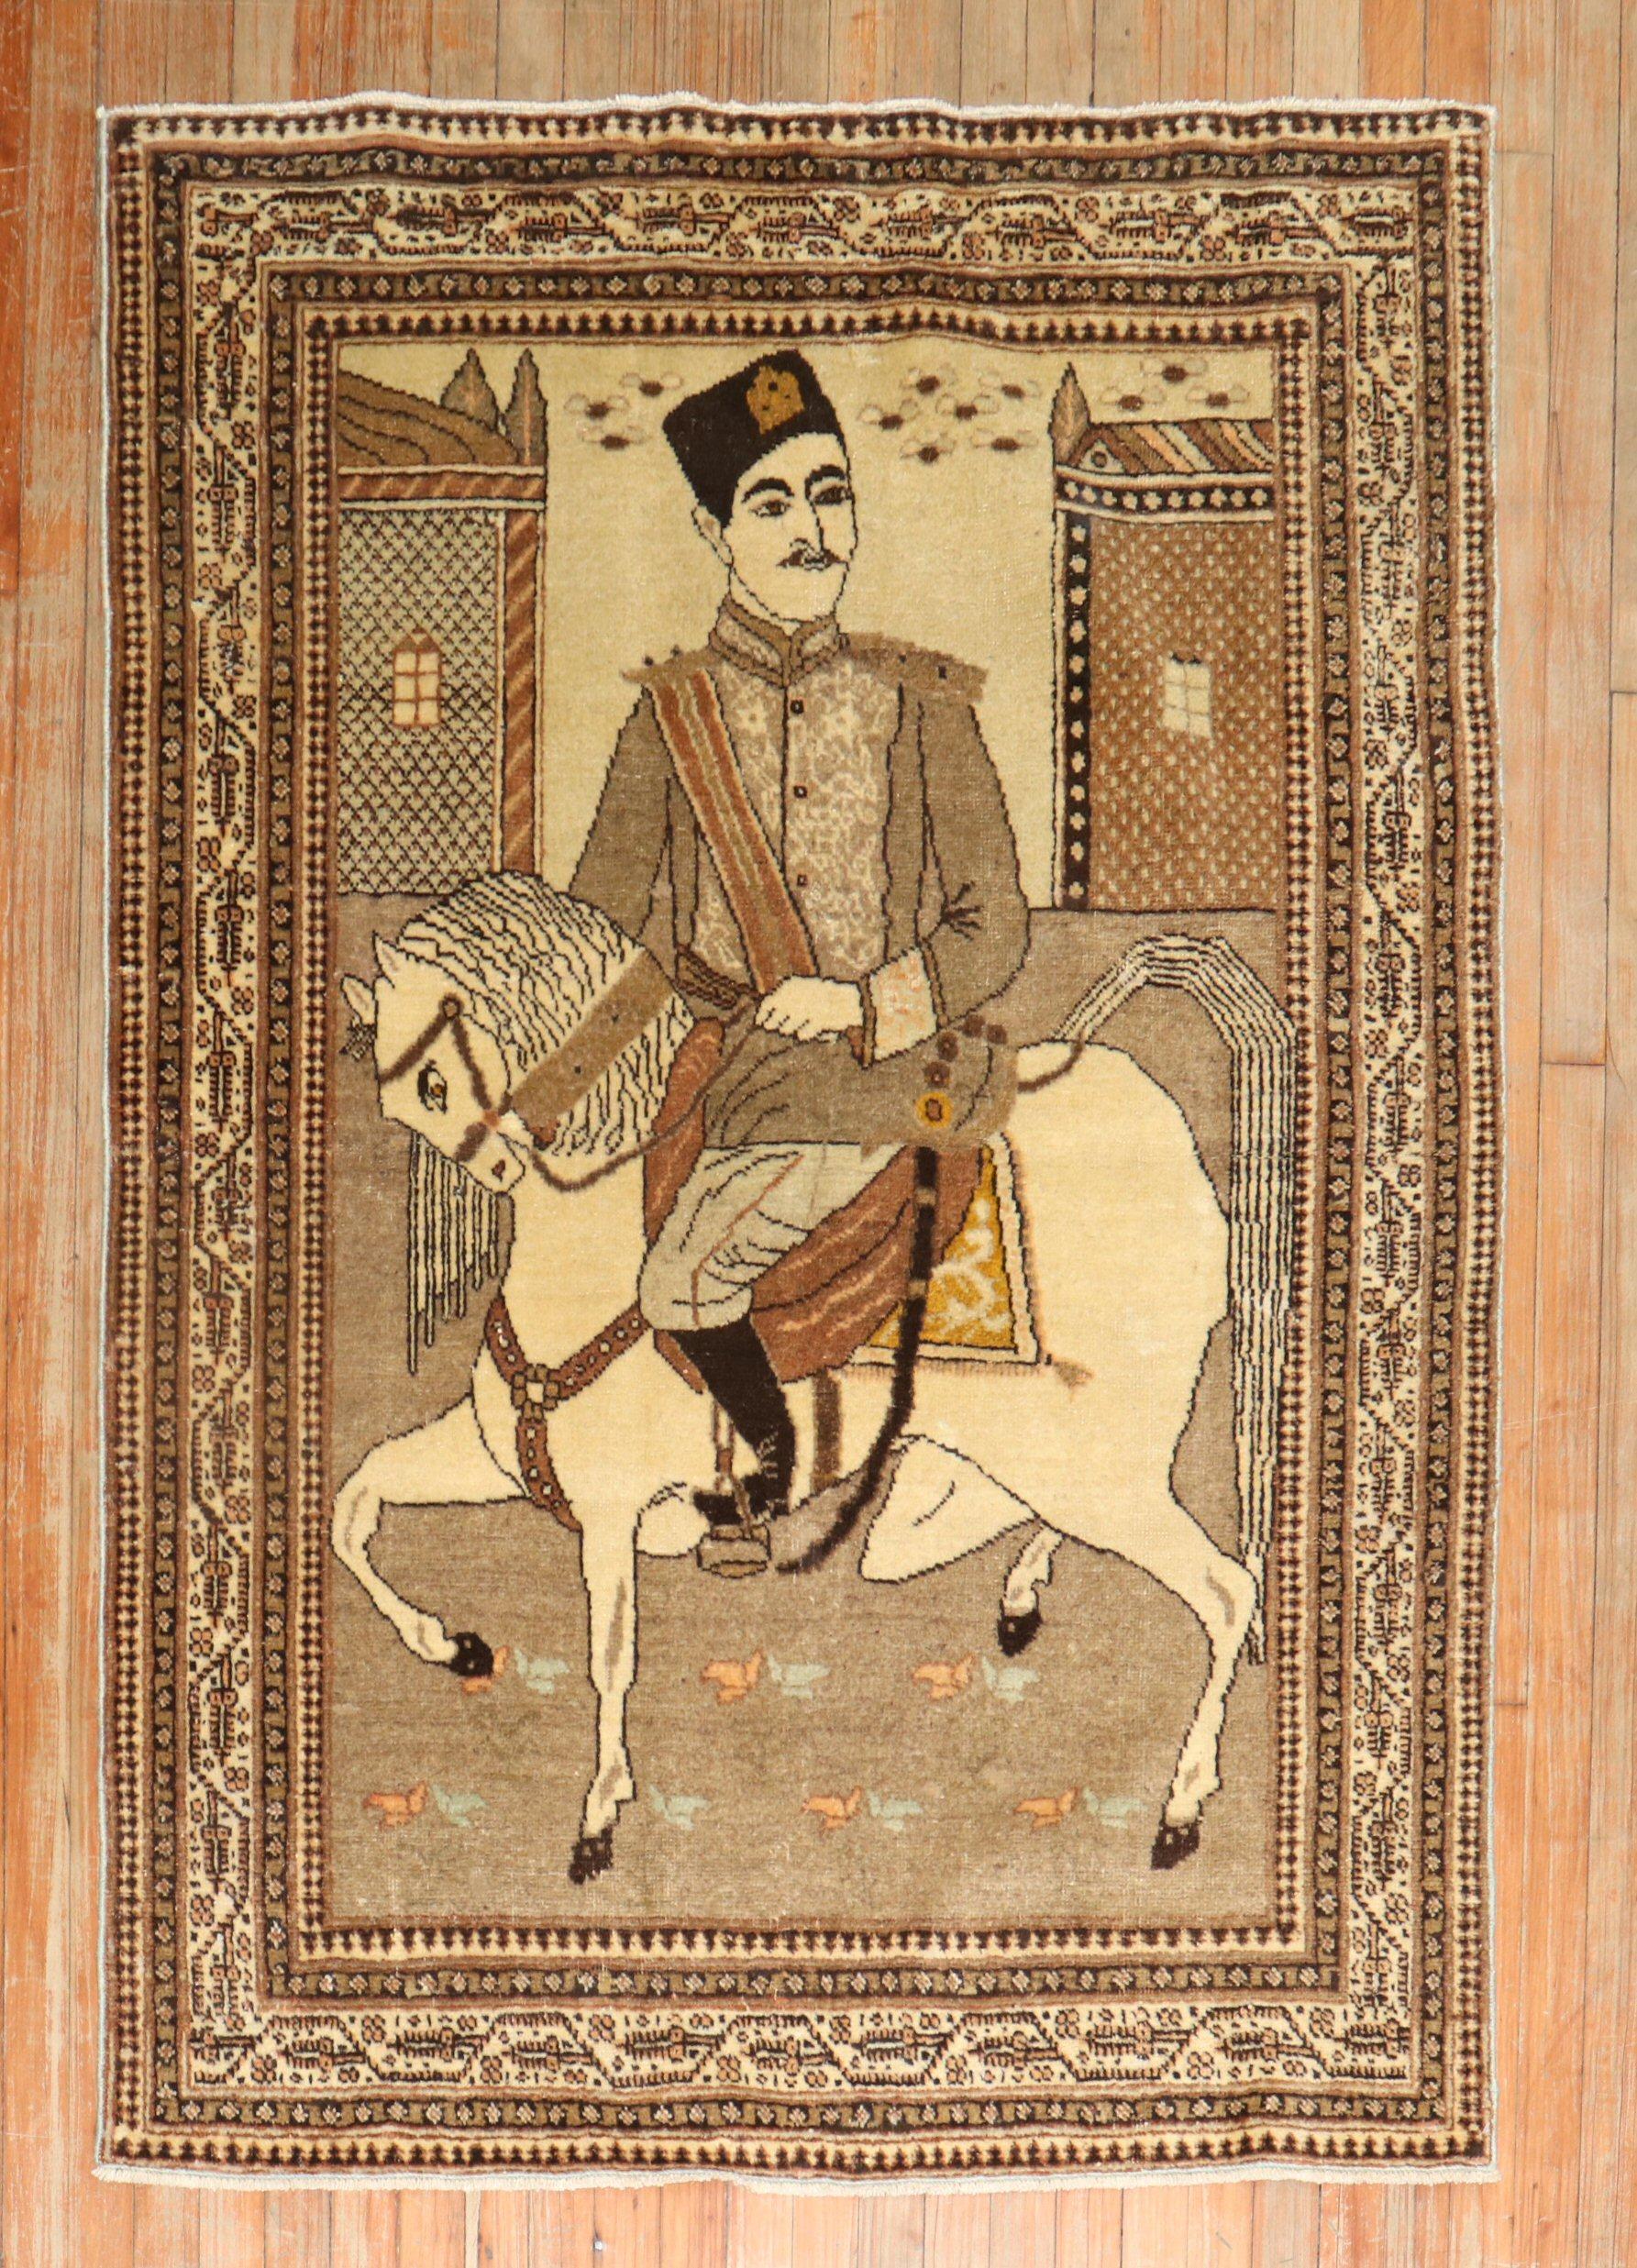 Tapis persan Tabriz du début du 20e siècle avec un homme persan chevauchant son cheval.

4' x 5'8''